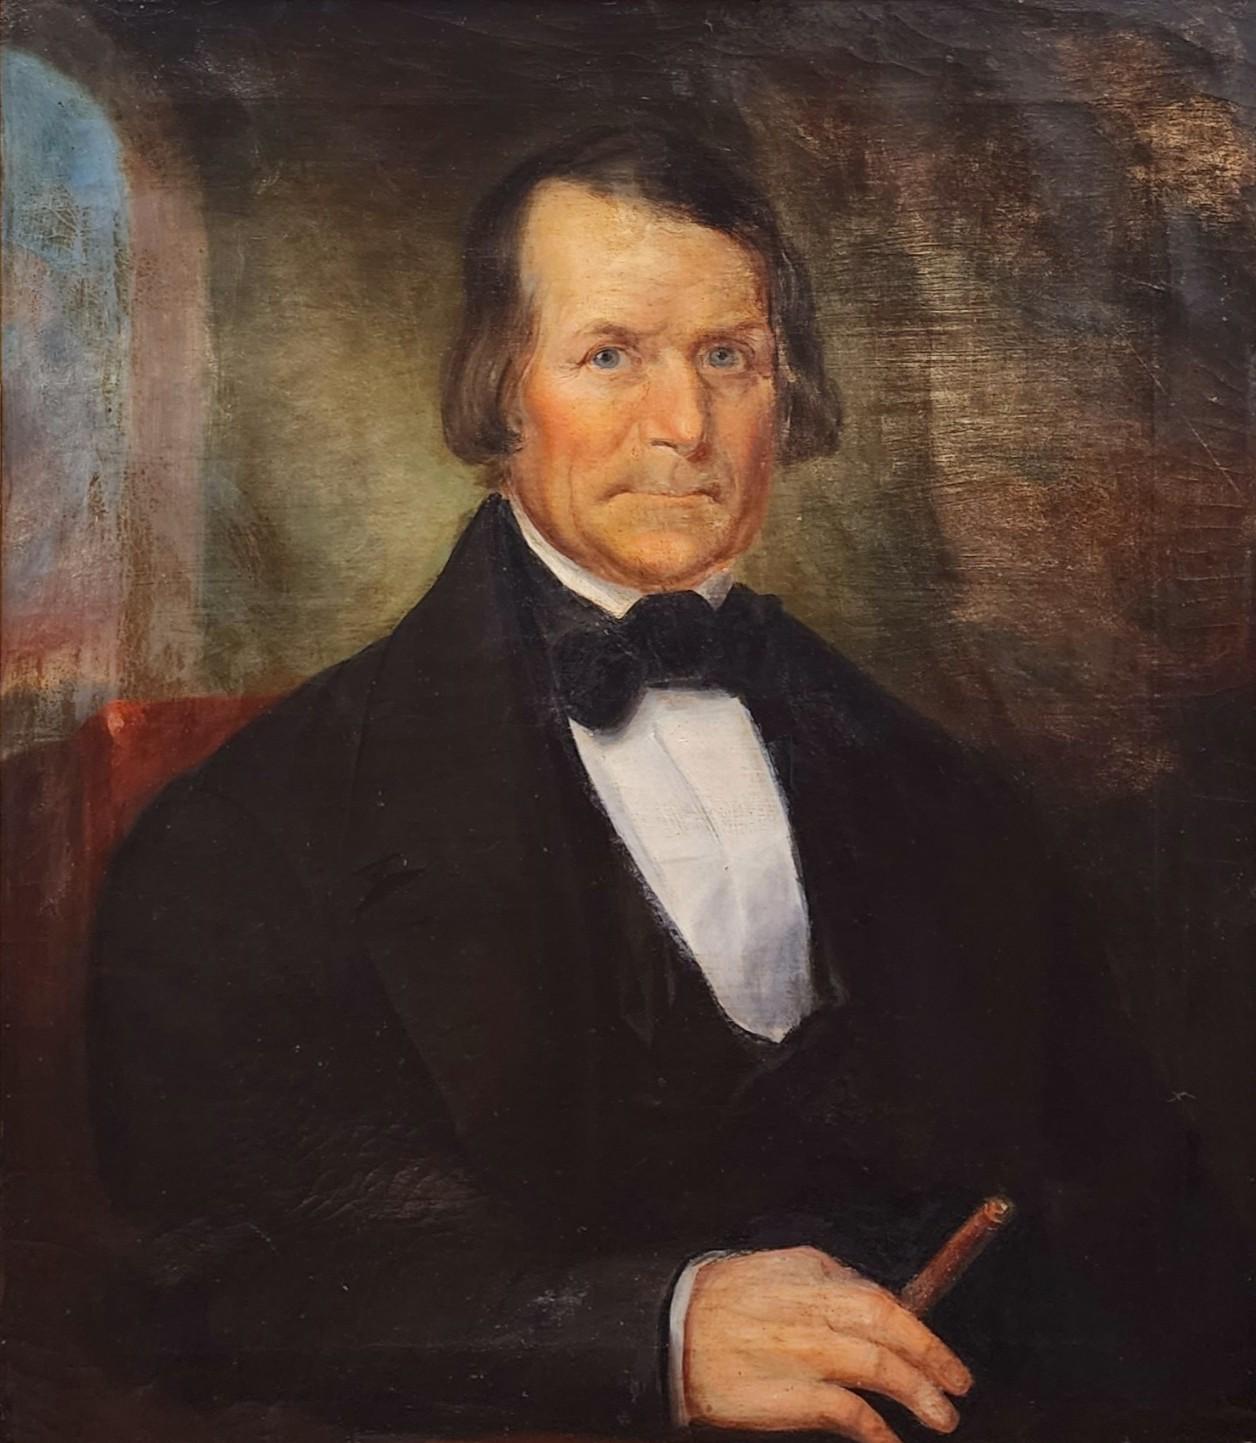 Porträt eines Mannes mit Zigarren, Bowtie, frühes amerikanisches Porträt, Rauchmann (Braun), Portrait Painting, von Unknown